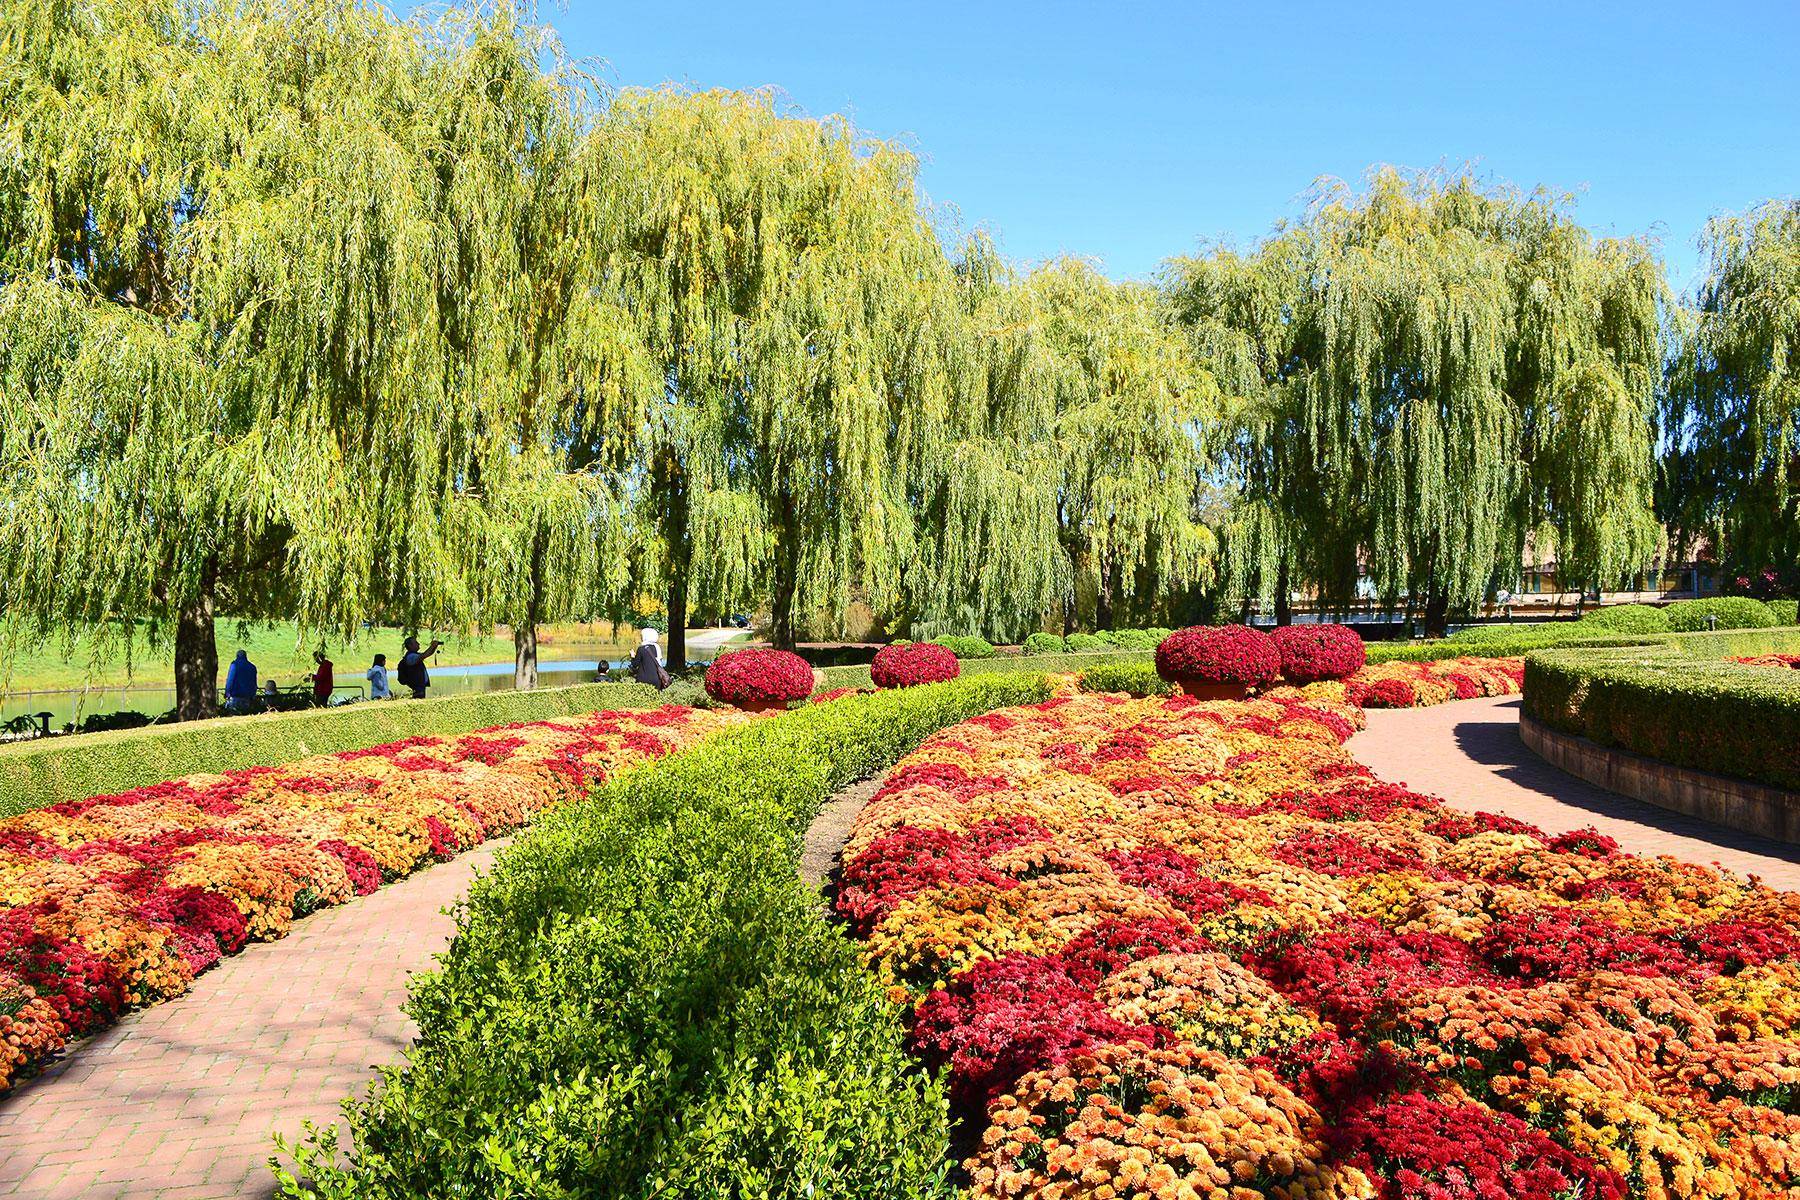 Chicago Botanic Garden Jobs Garden Layout